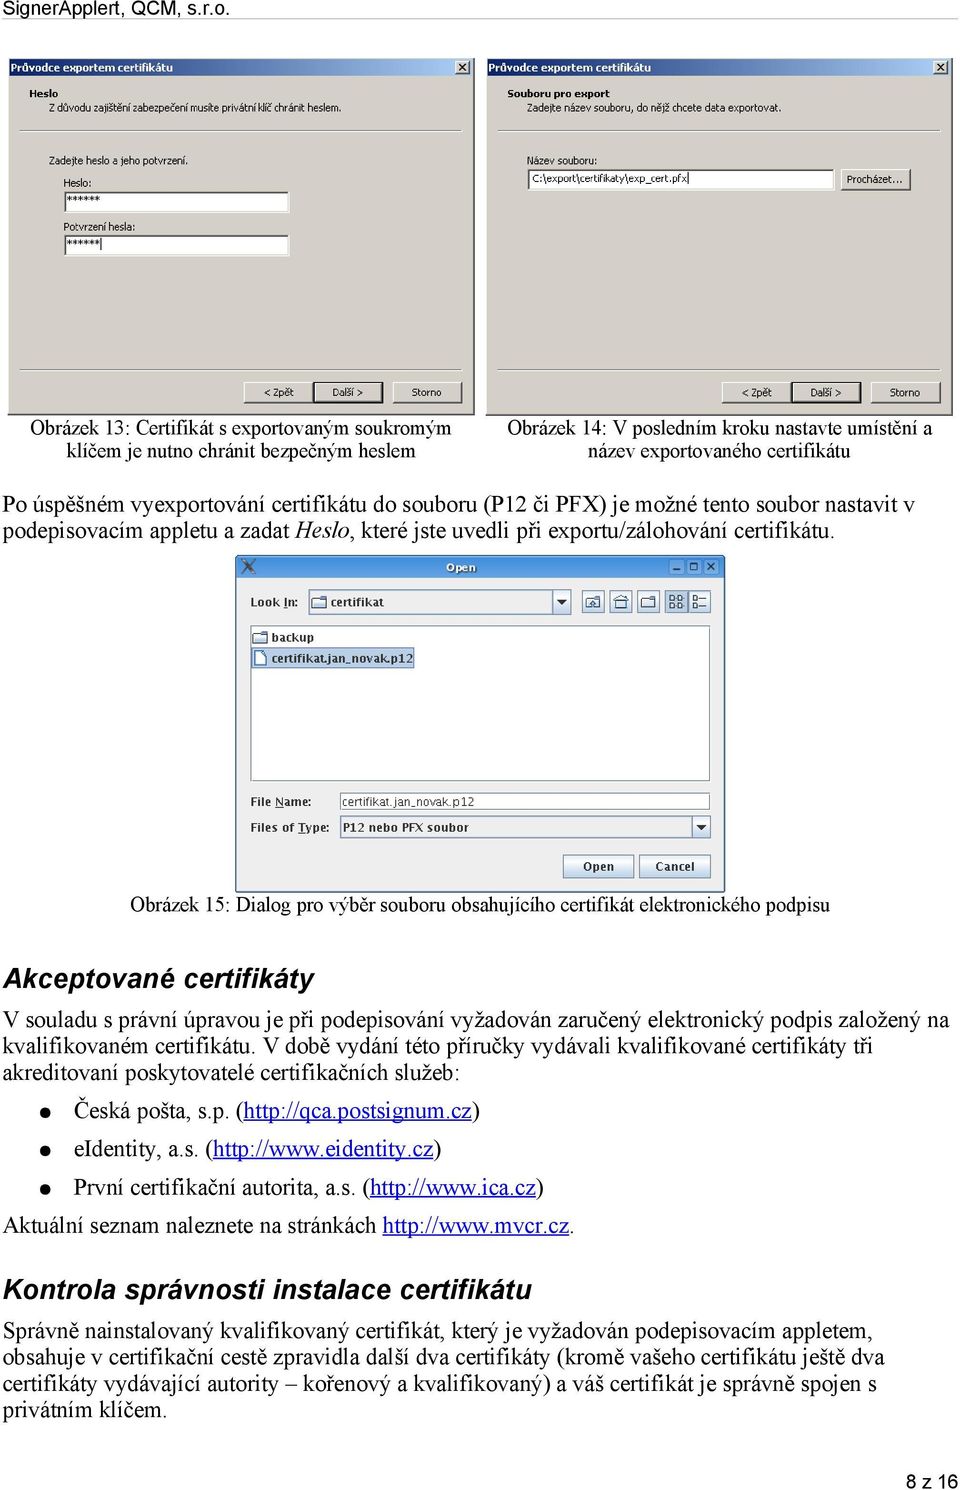 Obrázek 15: Dialog pro výběr souboru obsahujícího certifikát elektronického podpisu Akceptované certifikáty V souladu s právní úpravou je při podepisování vyžadován zaručený elektronický podpis